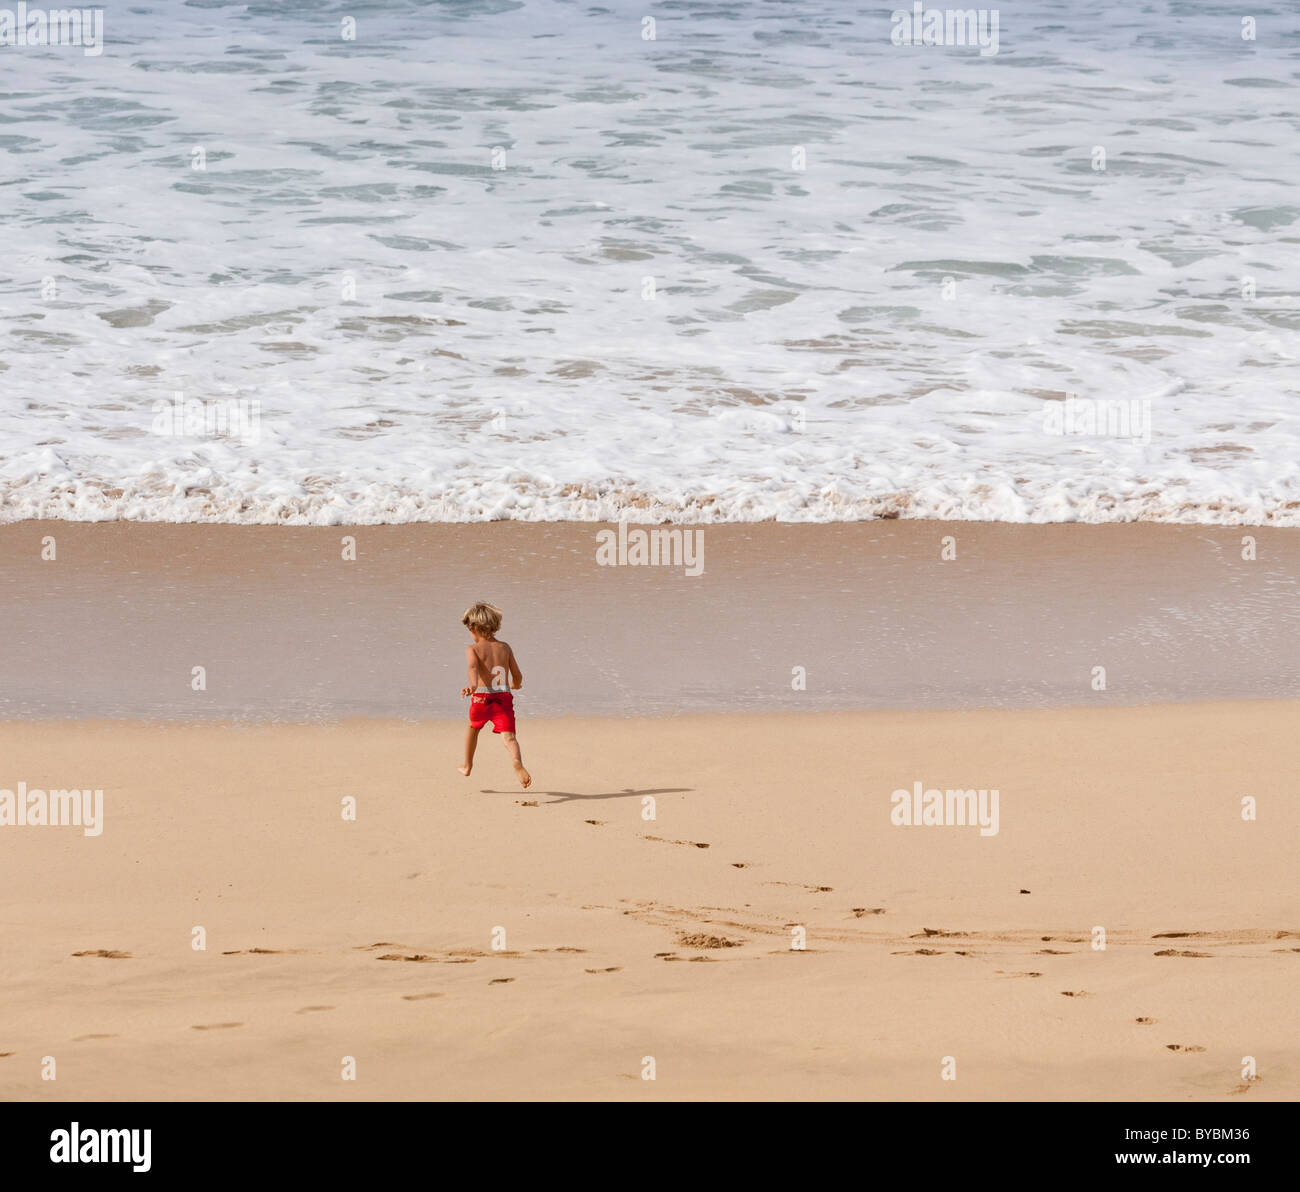 L'exécution du bord. Un jeune garçon en rouge les lignes de bain coule Polihale plage vers le bord de l'eau. Banque D'Images